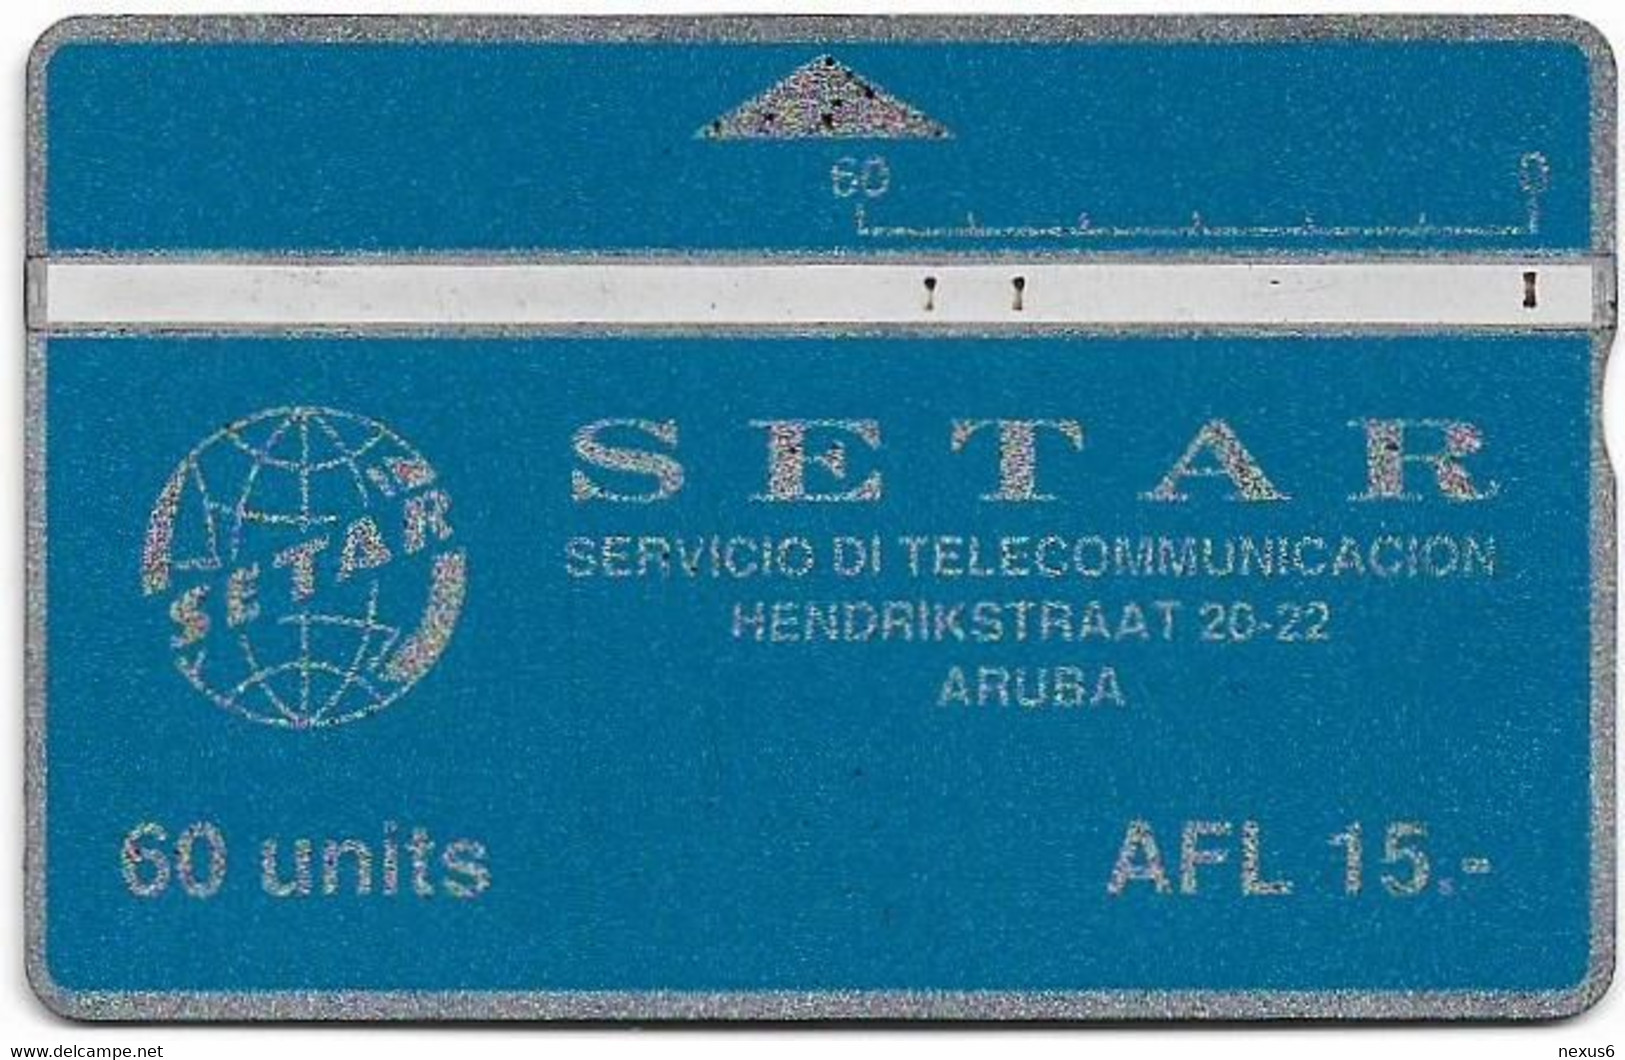 Aruba - Setar - L&G - Definitives - Blue & Silver - 110A - 10.1991, 60U, Used - Aruba